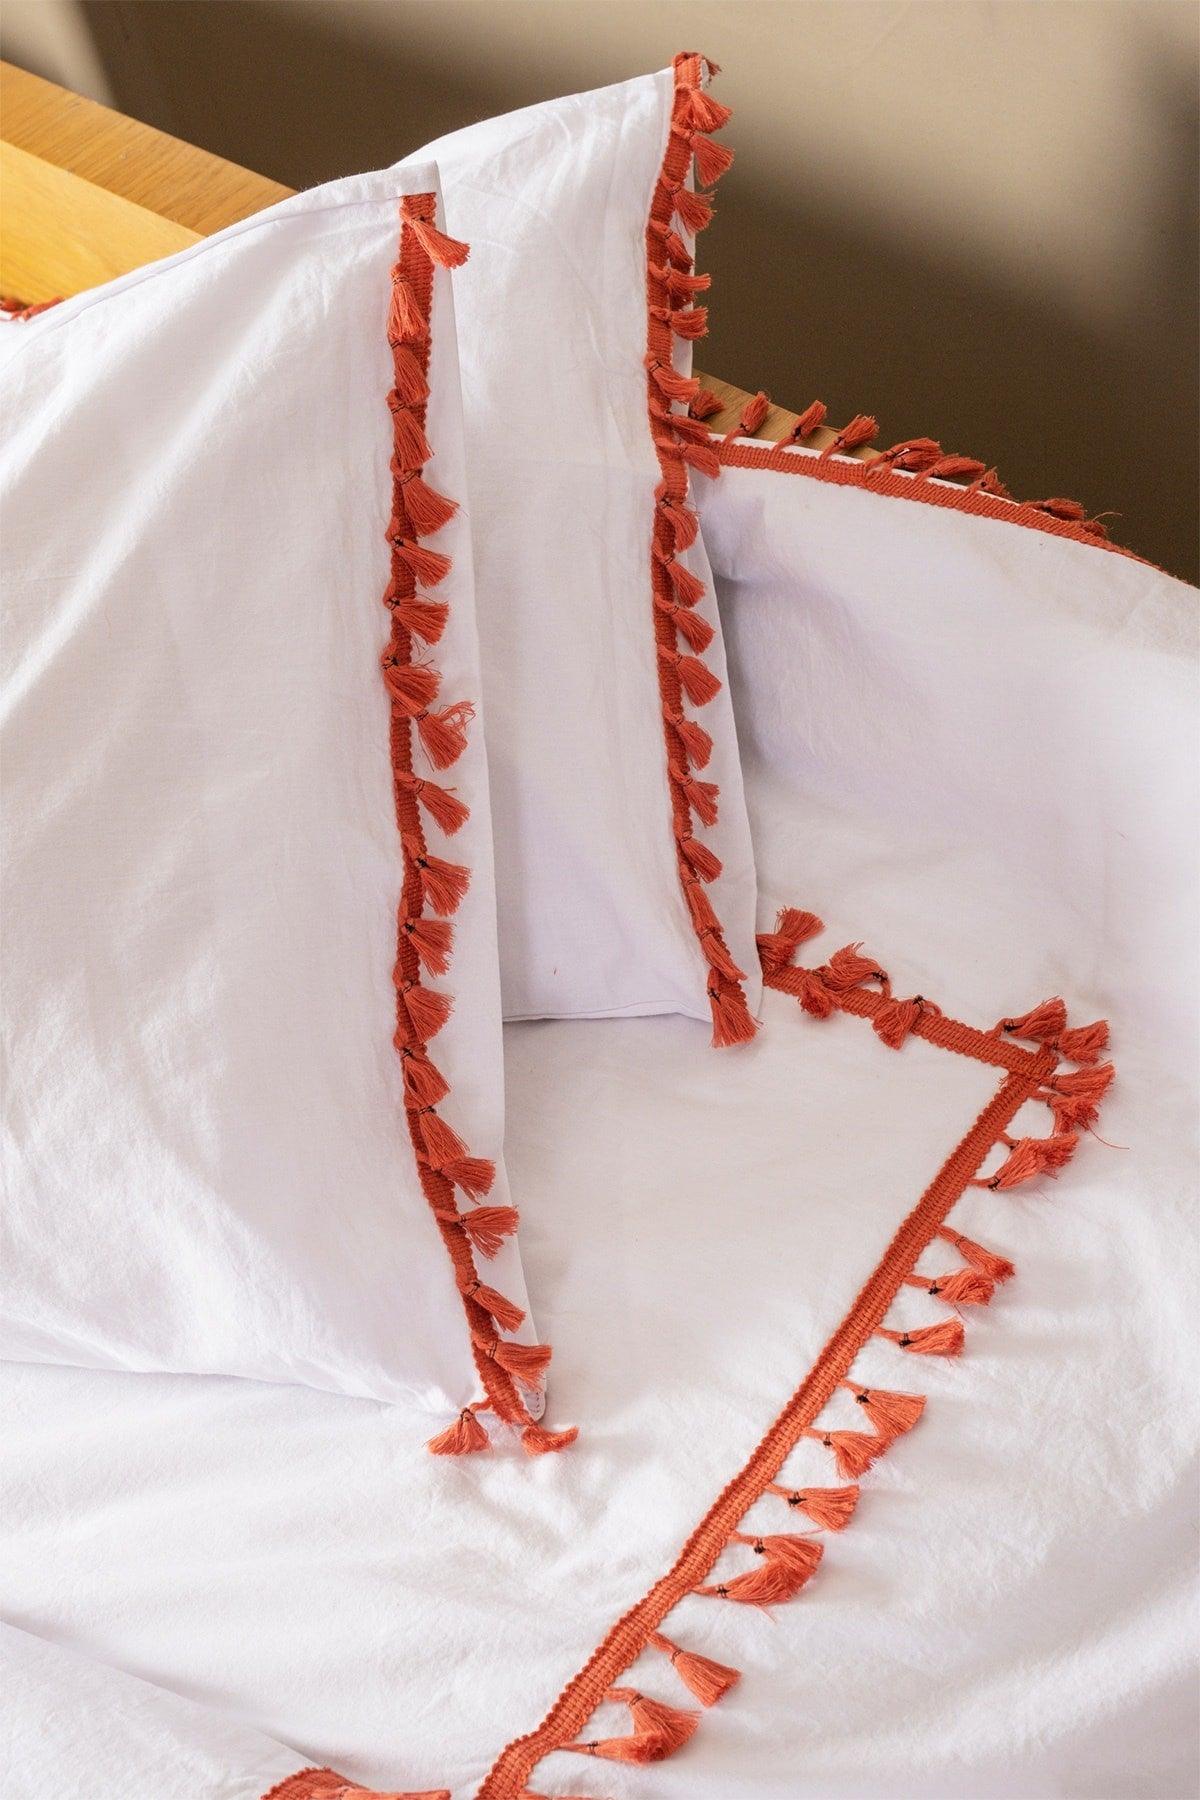 Red Pompom Full Organic White 100% Cotton Double Duvet Cover Pillow Set - Swordslife